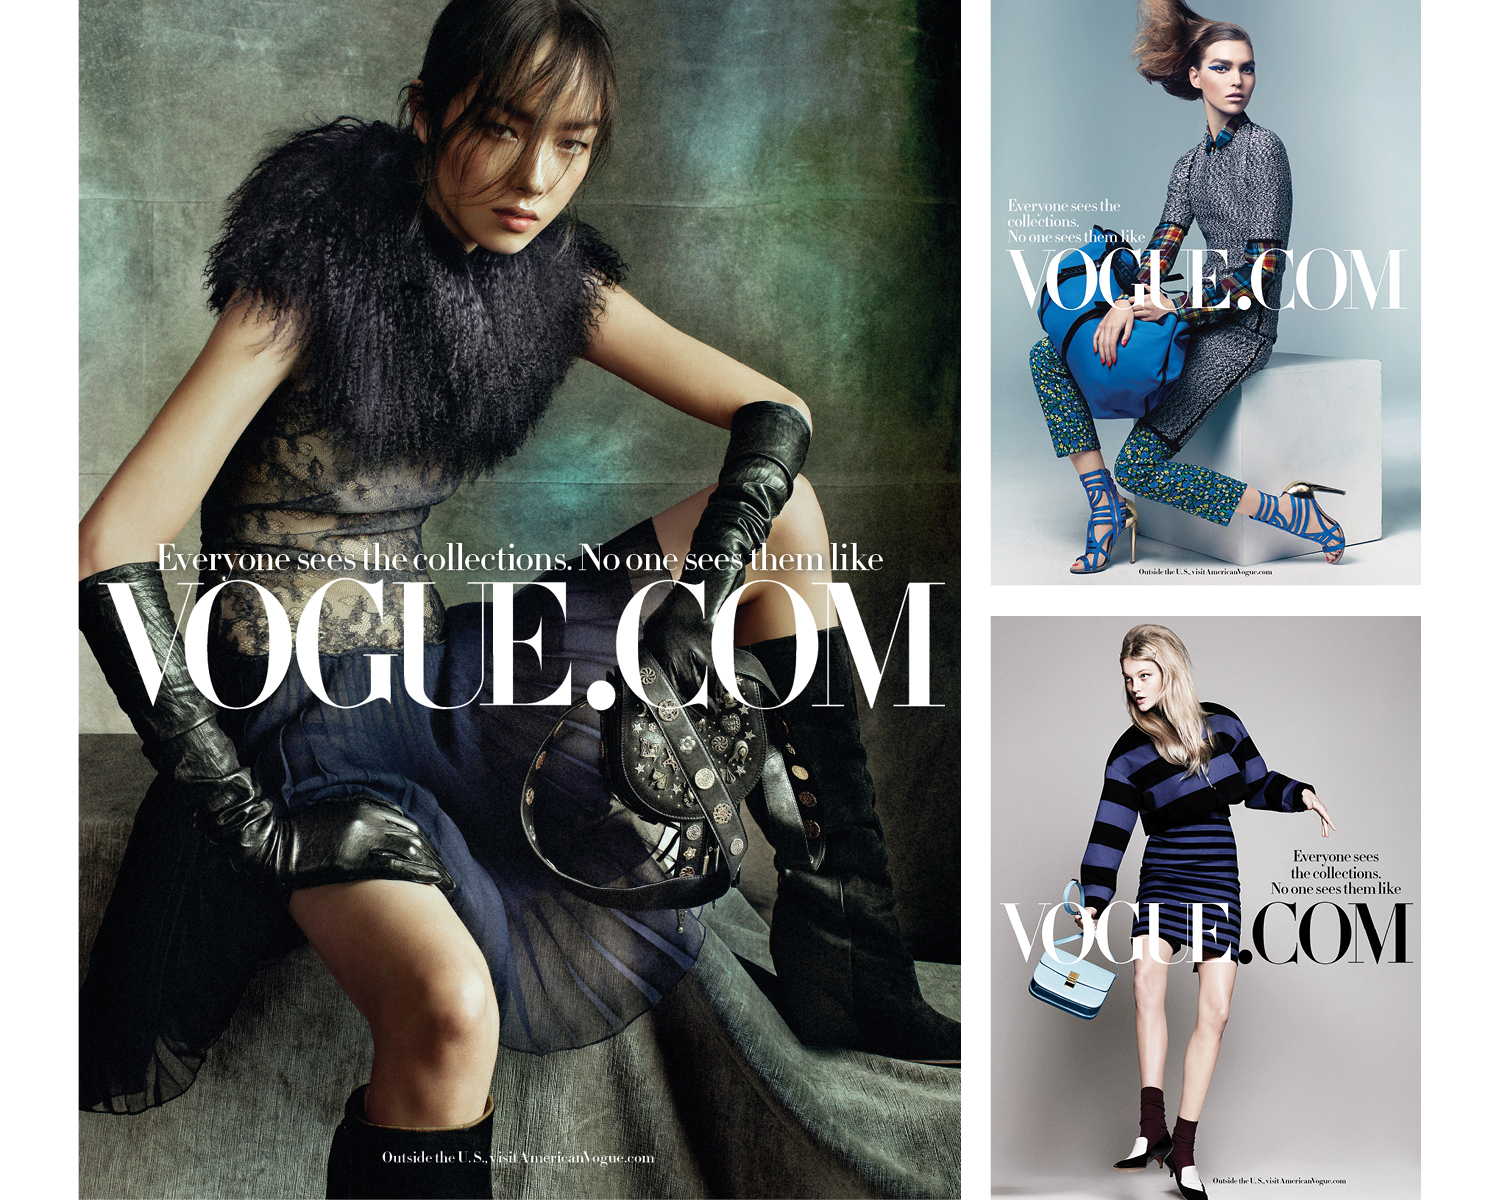  Vogue.com Print Ads  2012  Condé Nast Magazines 